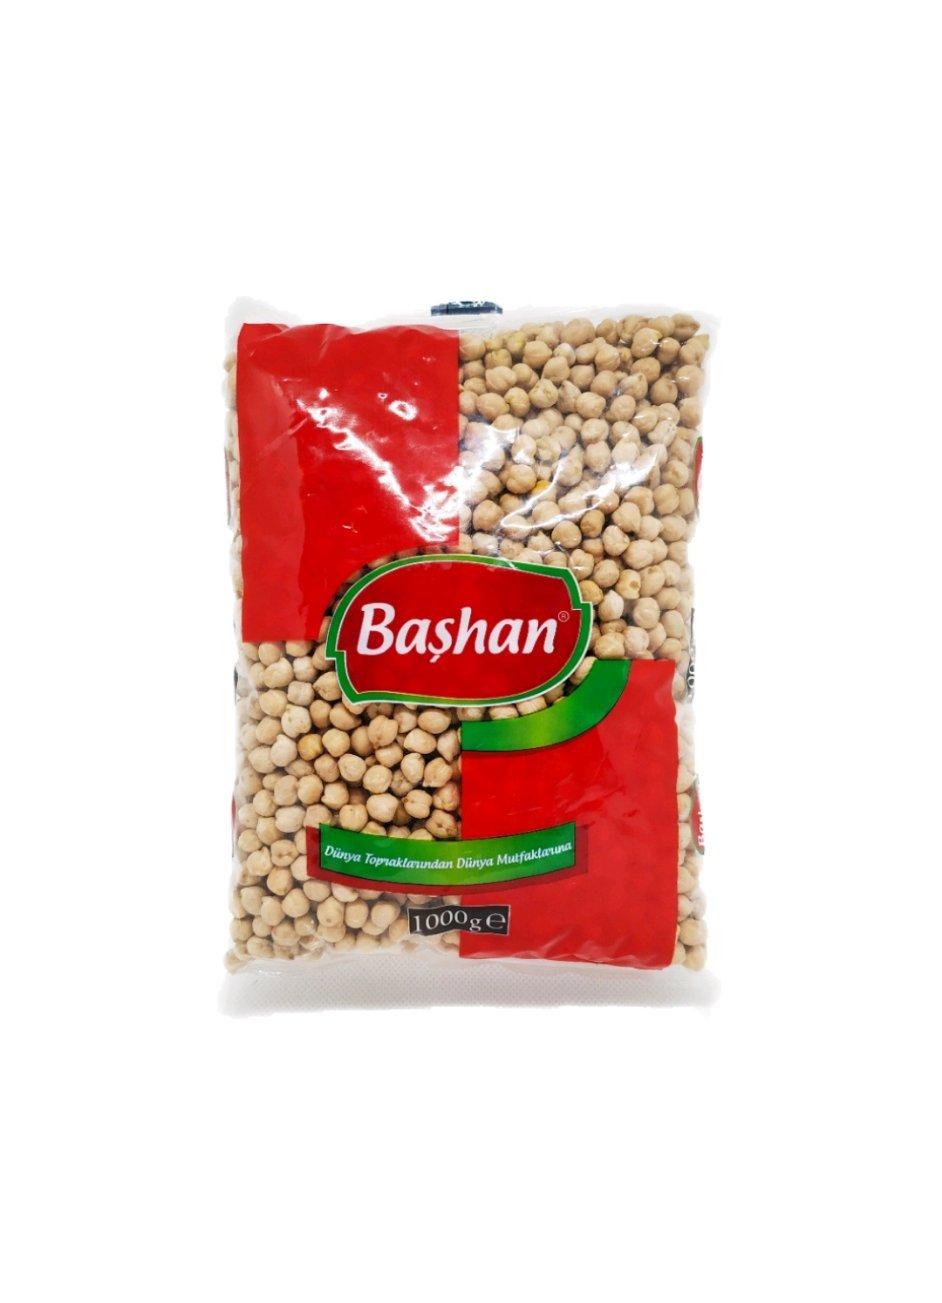 Produits orientaux en ligne : Bashan - Pois chiches